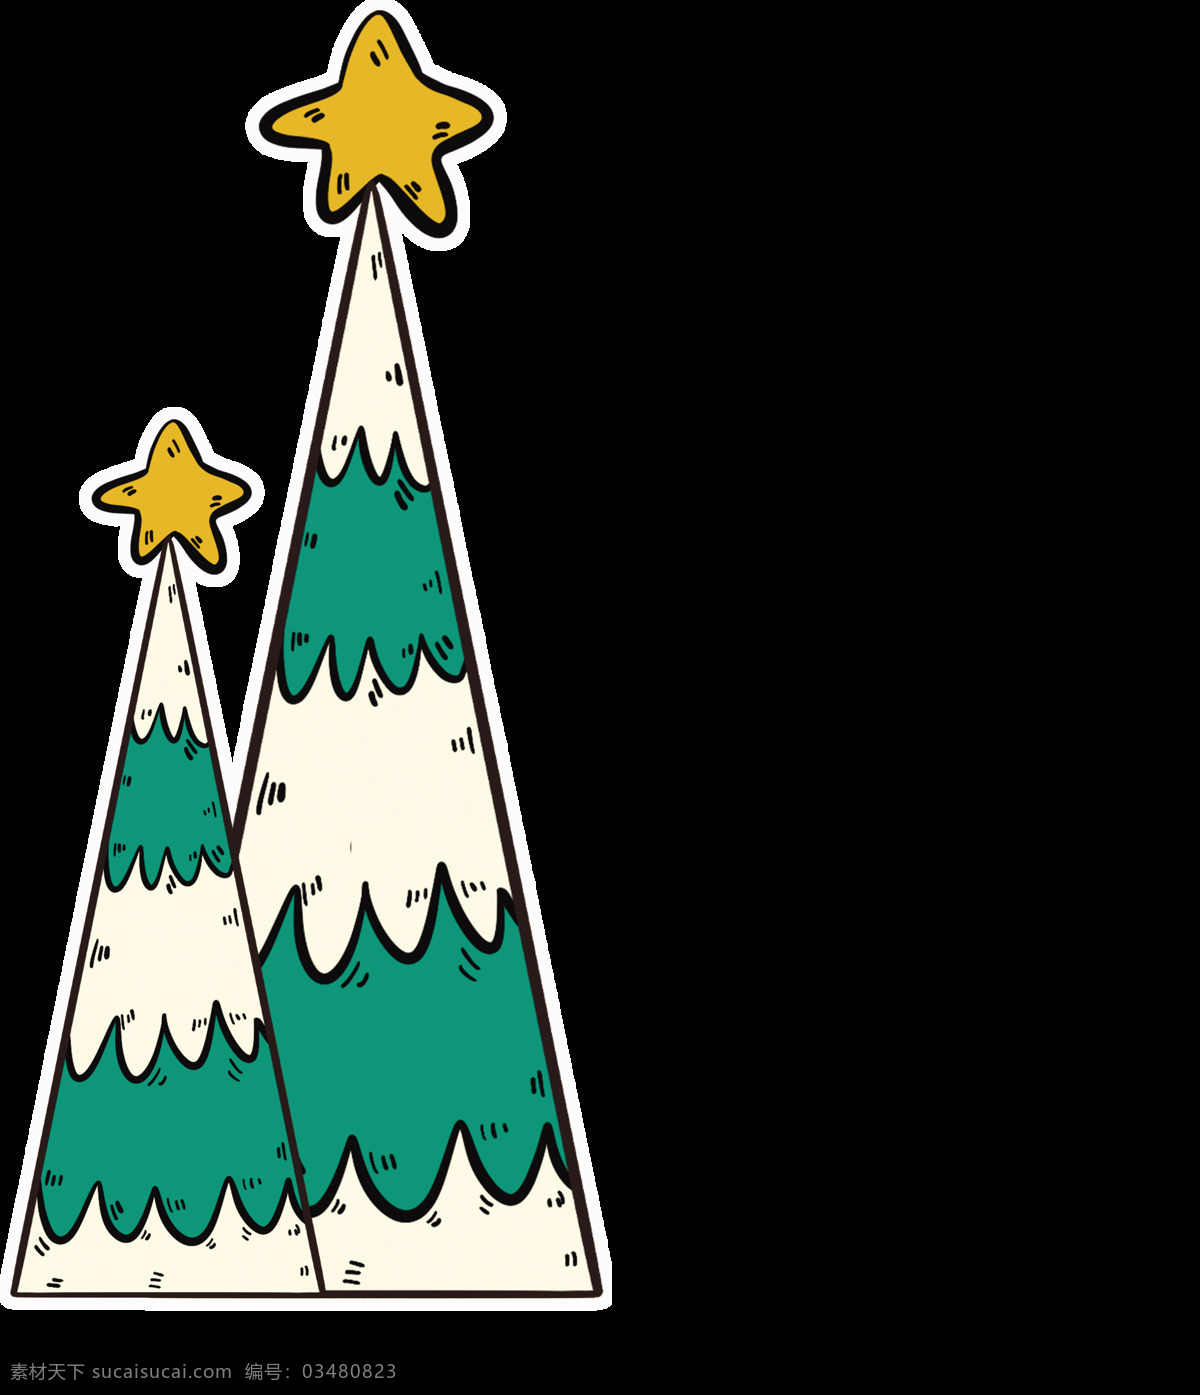 圣诞树 圣诞节海报 圣诞素材图片 圣诞素材 星星 绿色 动漫动画 风景漫画